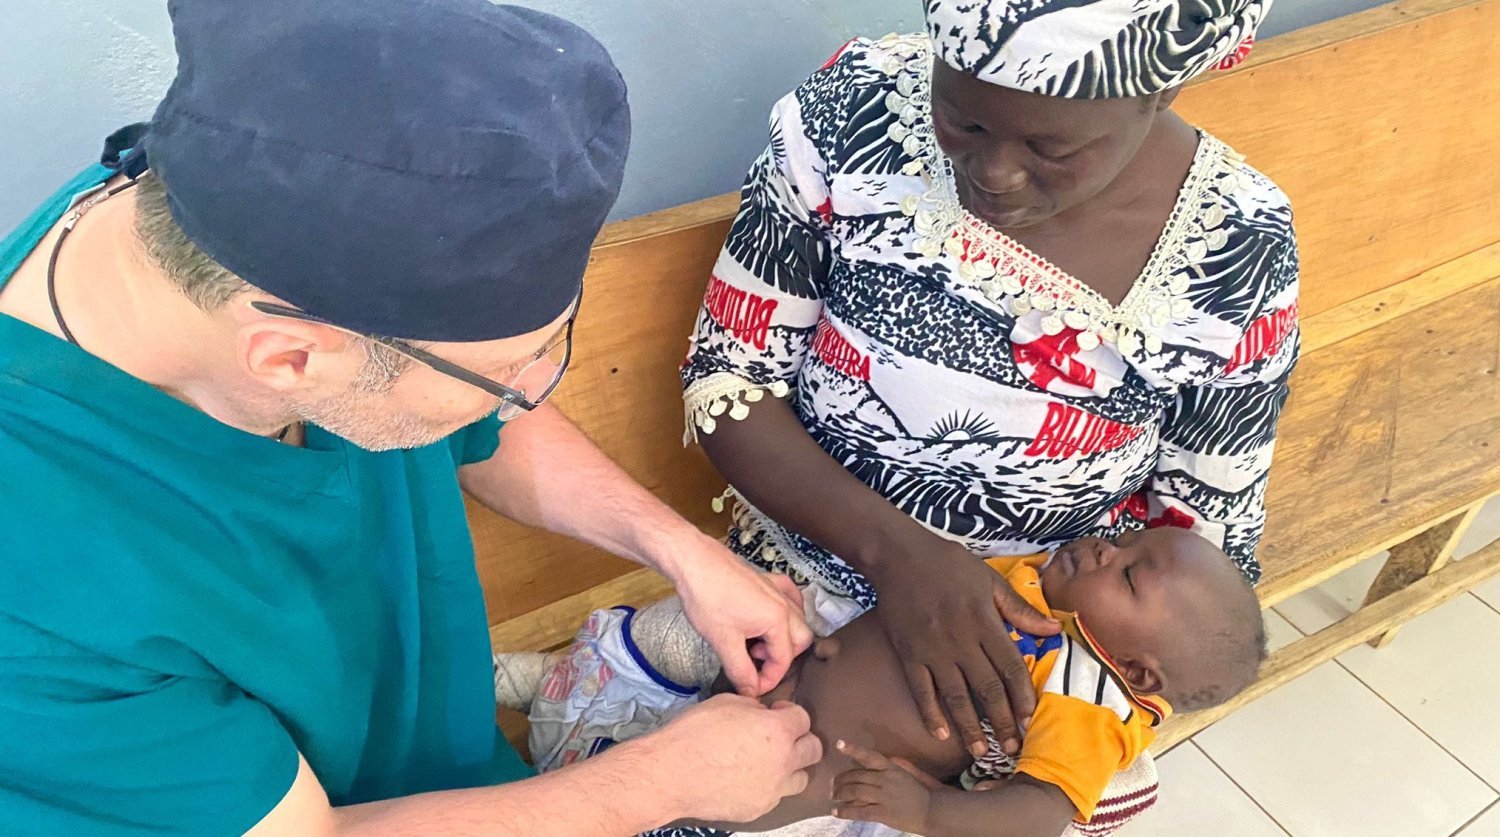 Wolontariusz z Kętrzyna walczy o zdrowie Afrykańczyków w Czadzie Artykuł Sponsorowany, Olsztyn, Wiadomości